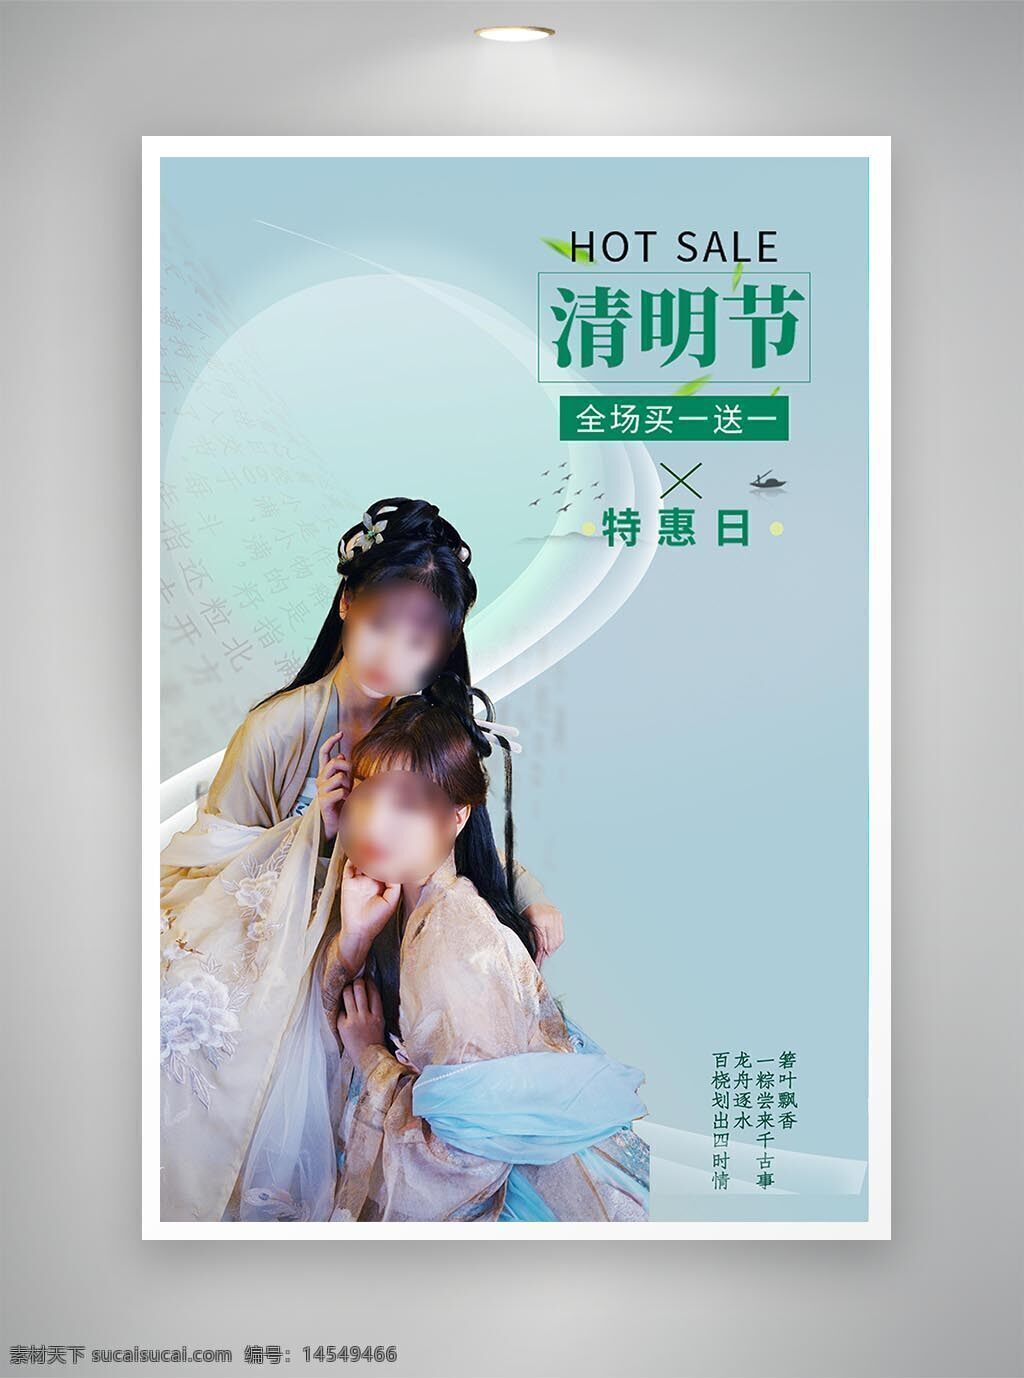 中国风海报 促销海报 节日海报 古风海报 清明节海报